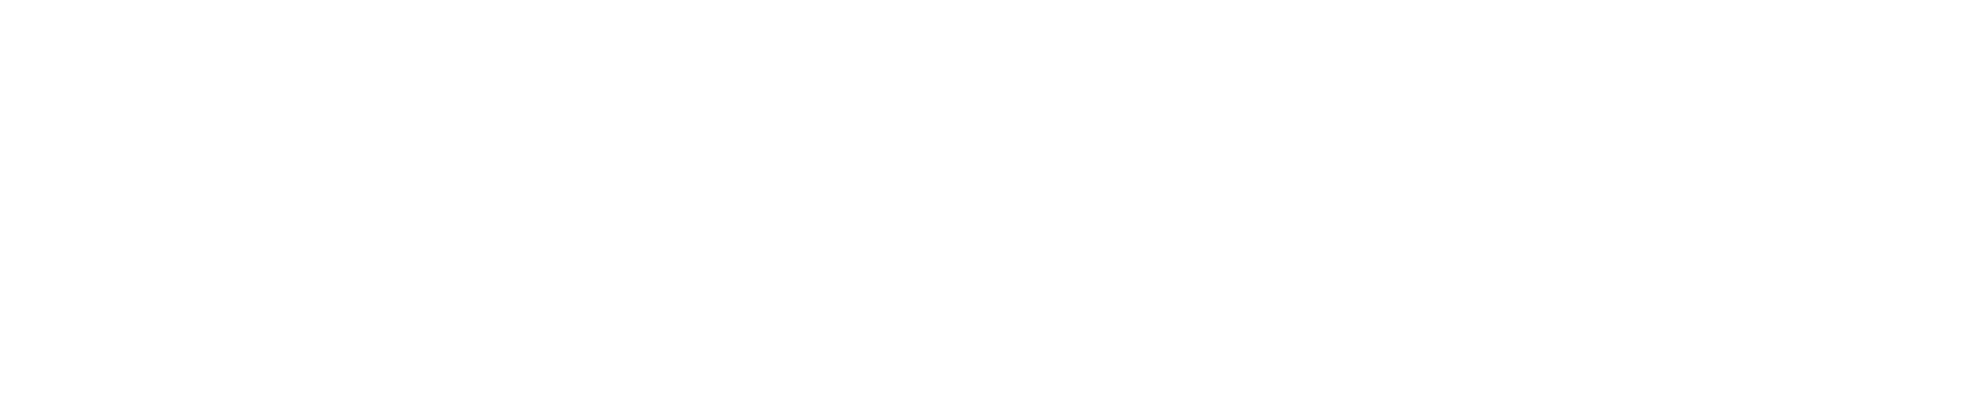 Rhythmic Financial LLC